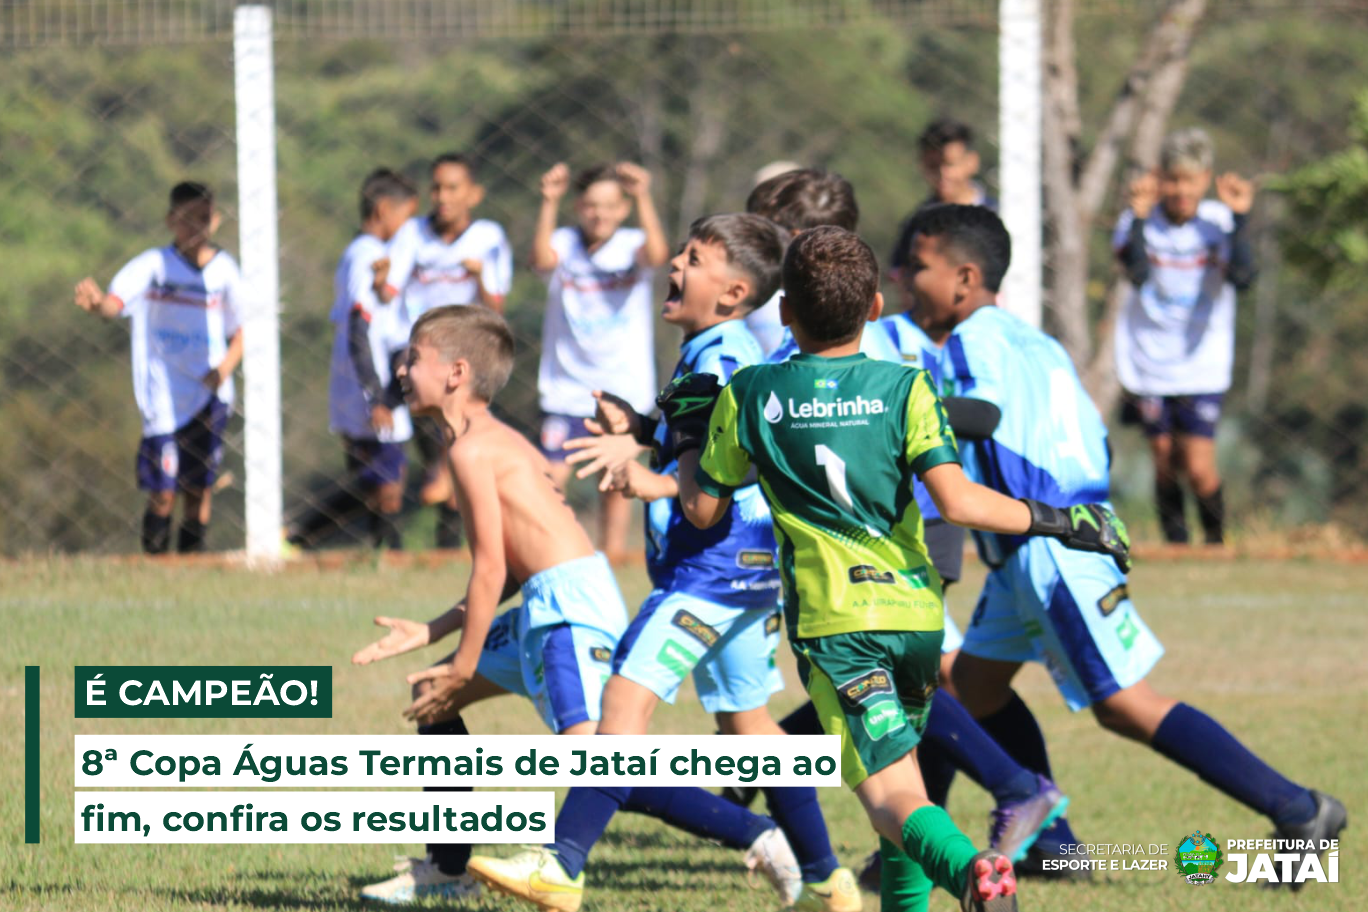 Torneio de futebol com participação grátis feminina leva campeã à Copa -  Esportividade - Guia de esporte de São Paulo e região